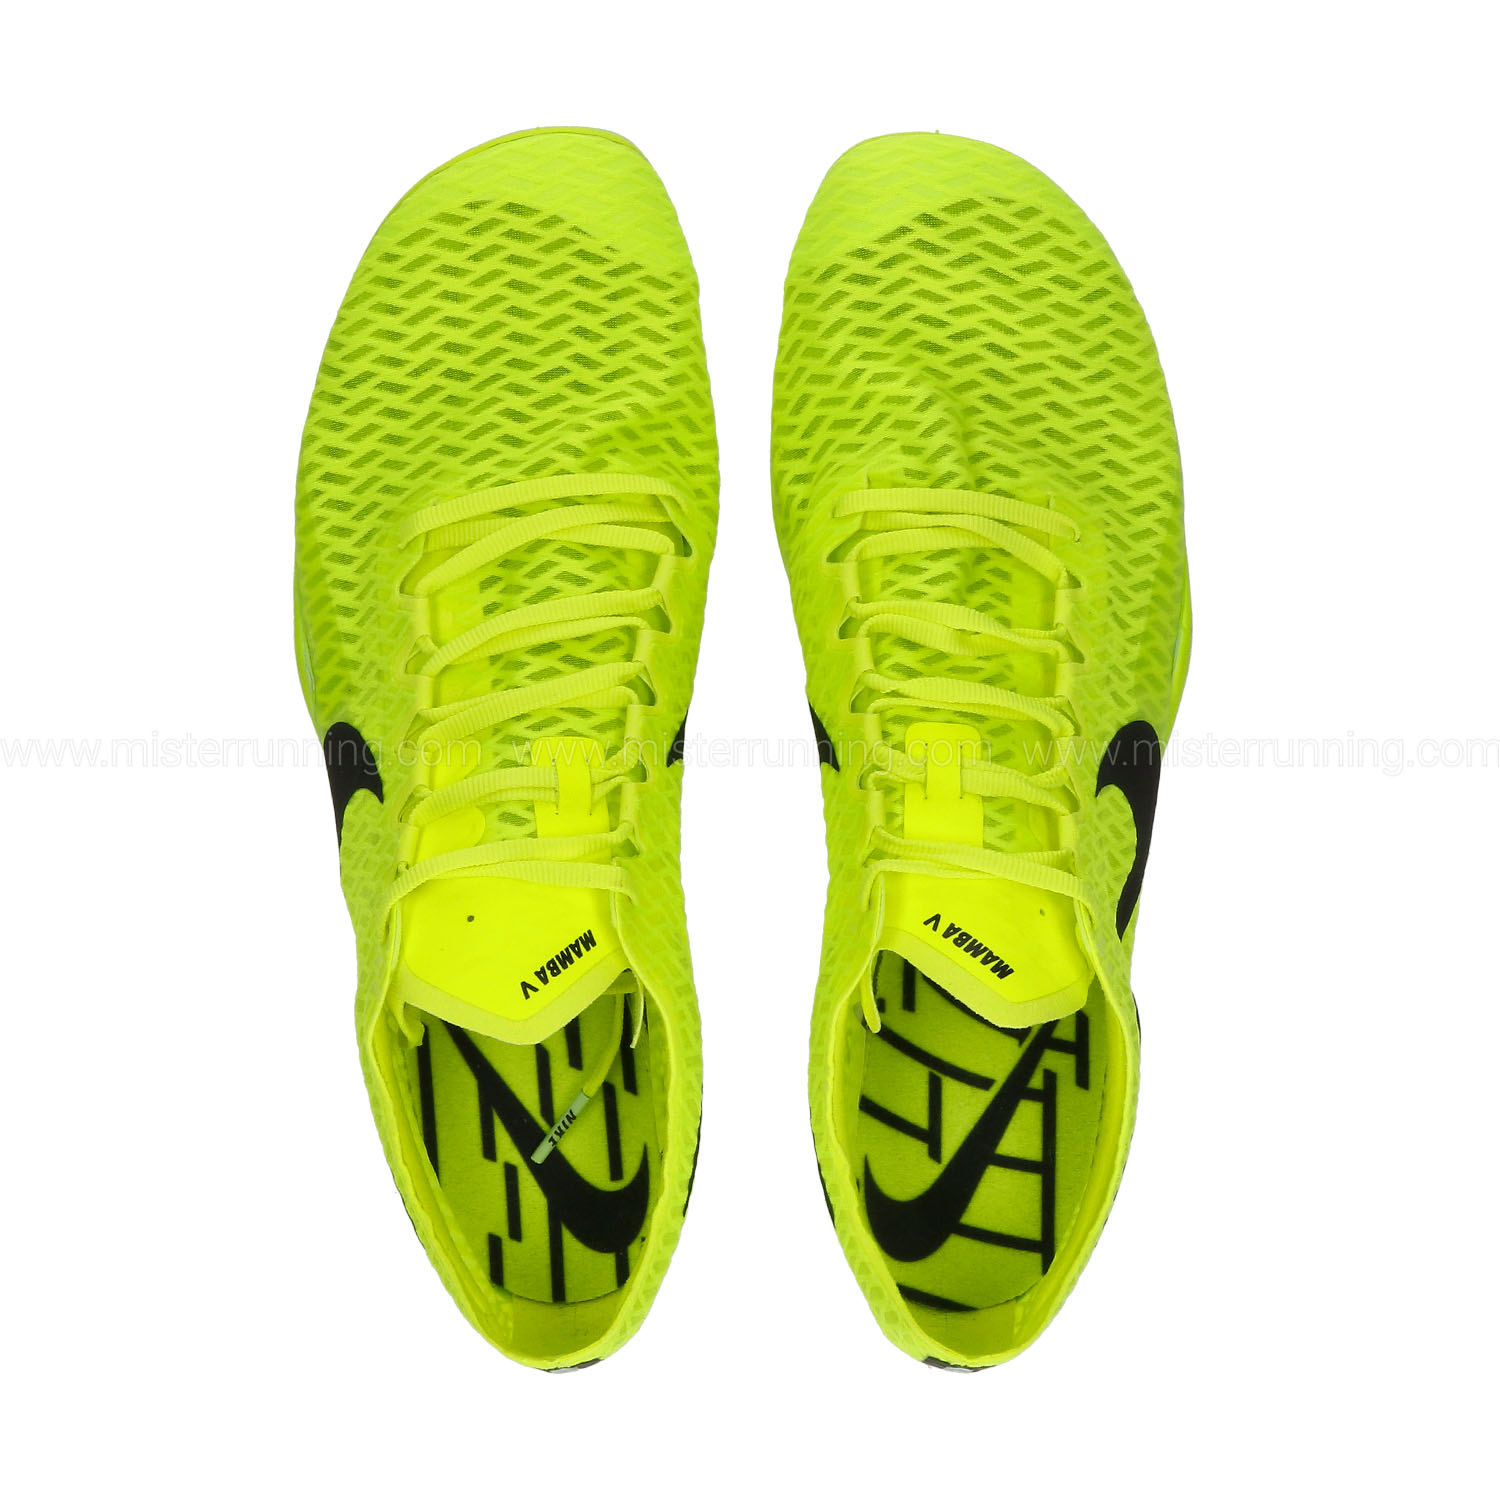 Nike Zoom Mamba V - Volt/Cave Purple/Mint Foam/Vachetta Tan